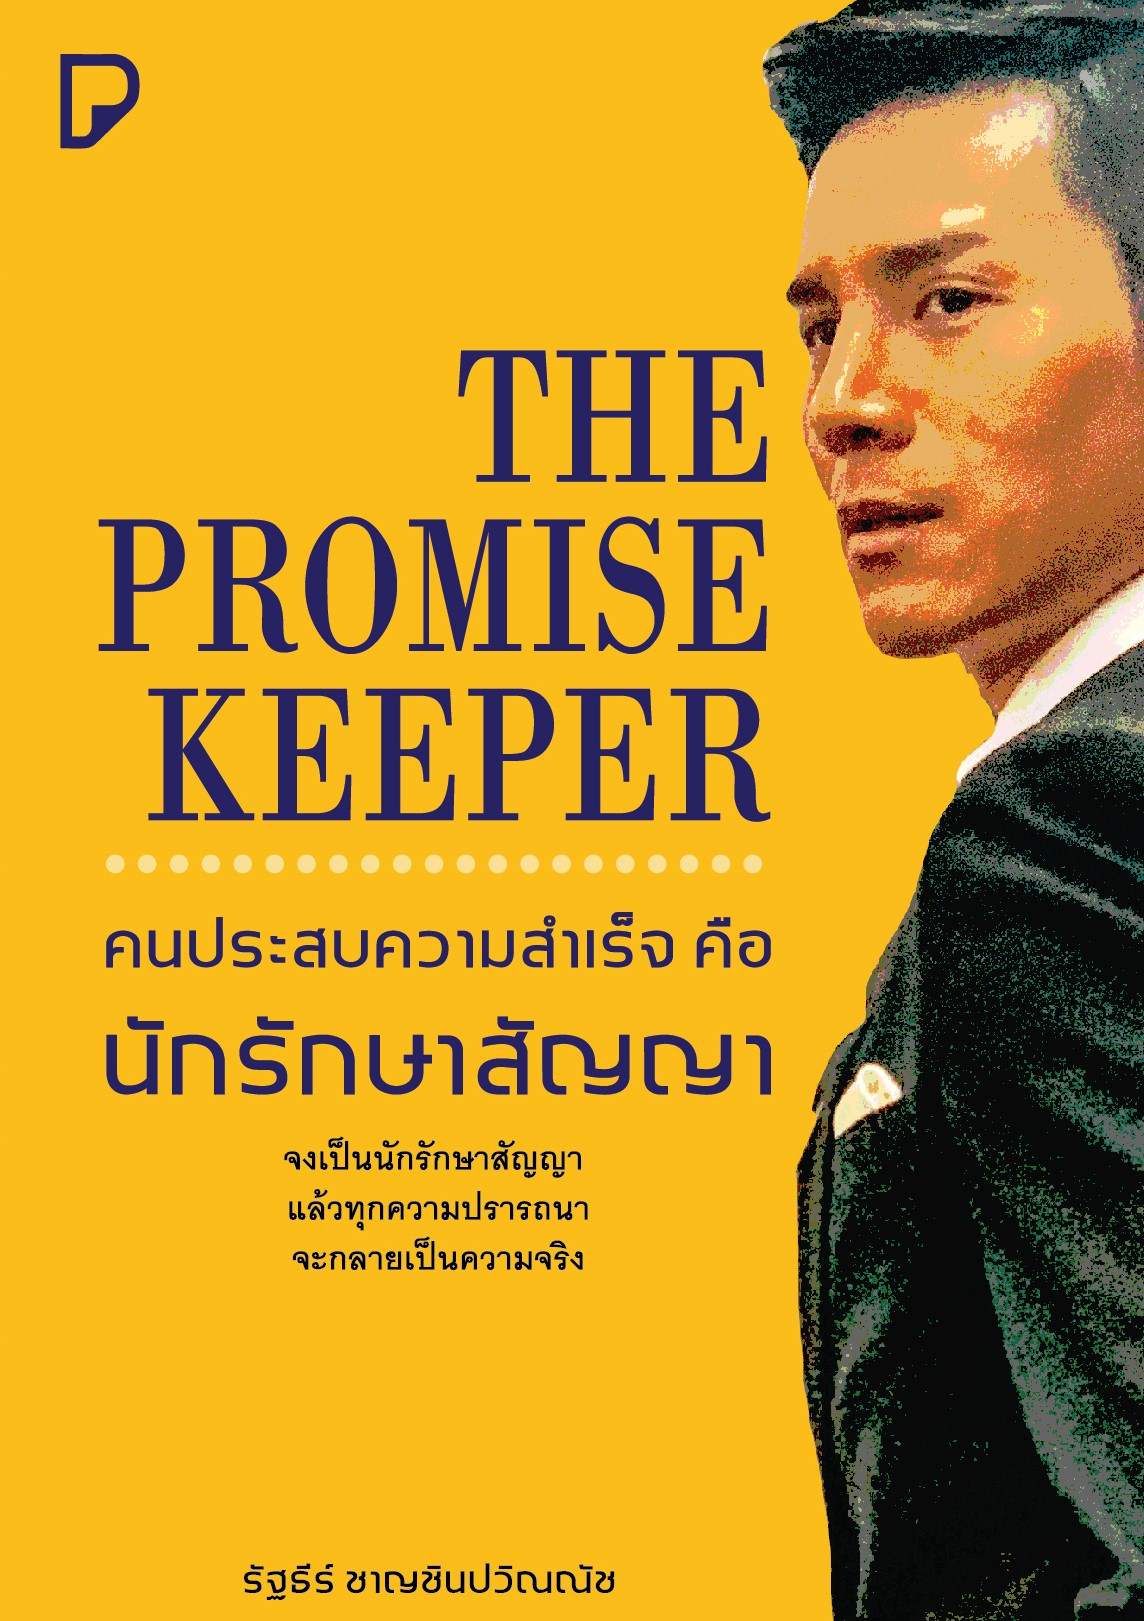 The Promise Keeper คนประสบความสำเร็จต้องเป็นนักรักษาสัญญา / รัฐธีร์ ชาญชินปวิณณัช (สนพ.บริษัท พิมพ์ทวีคูณ จำกัด) / ใหม่